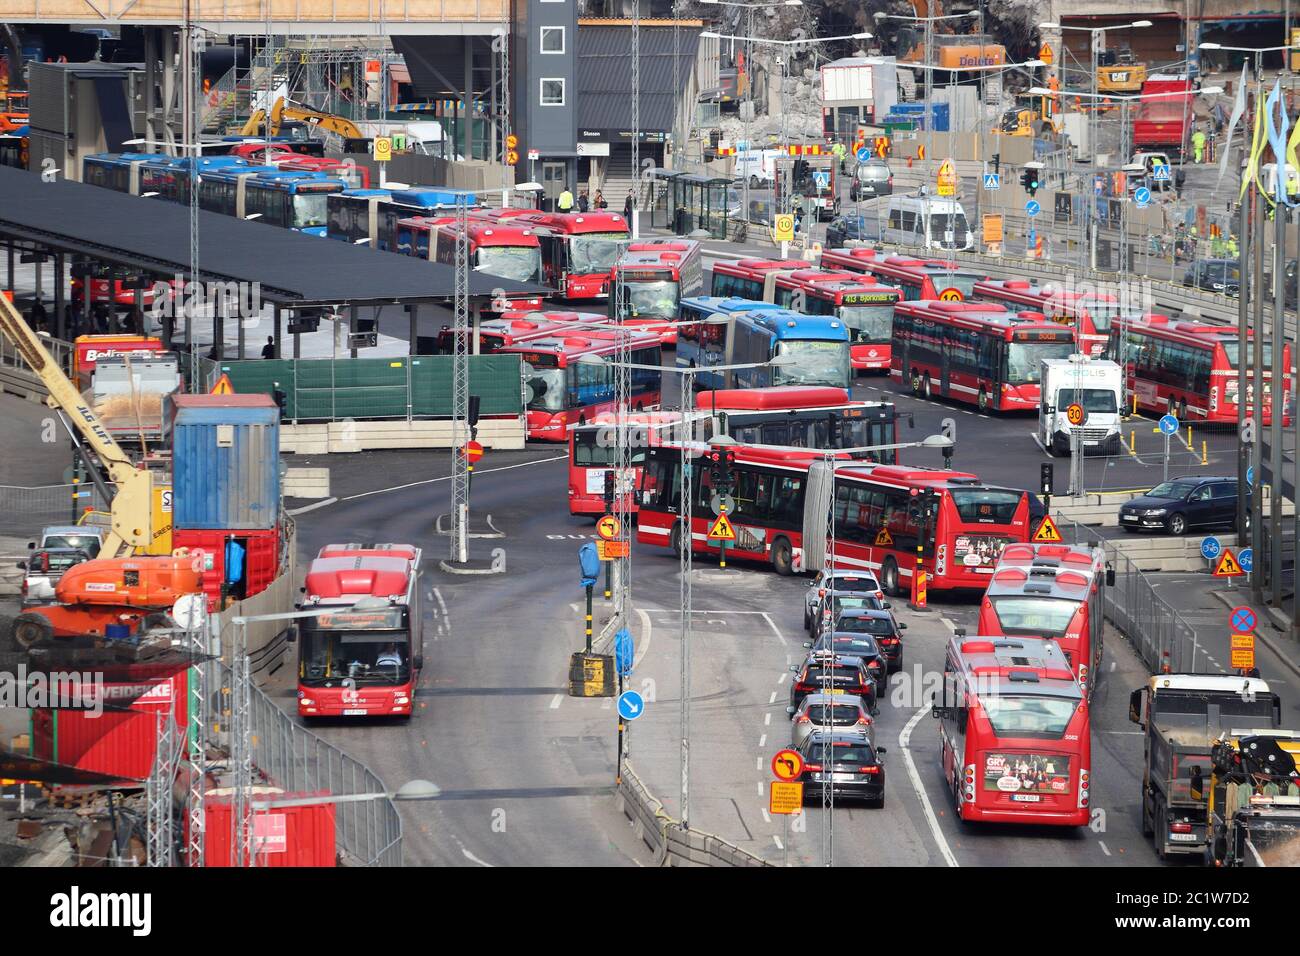 Stoccolma, Svezia - Agosto 23, 2018: autobus della città di Stoccolma, Svezia. Gli autobus sono gestiti da SL, Storstockholms Lokaltrafik (Stoccolma Loca Foto Stock